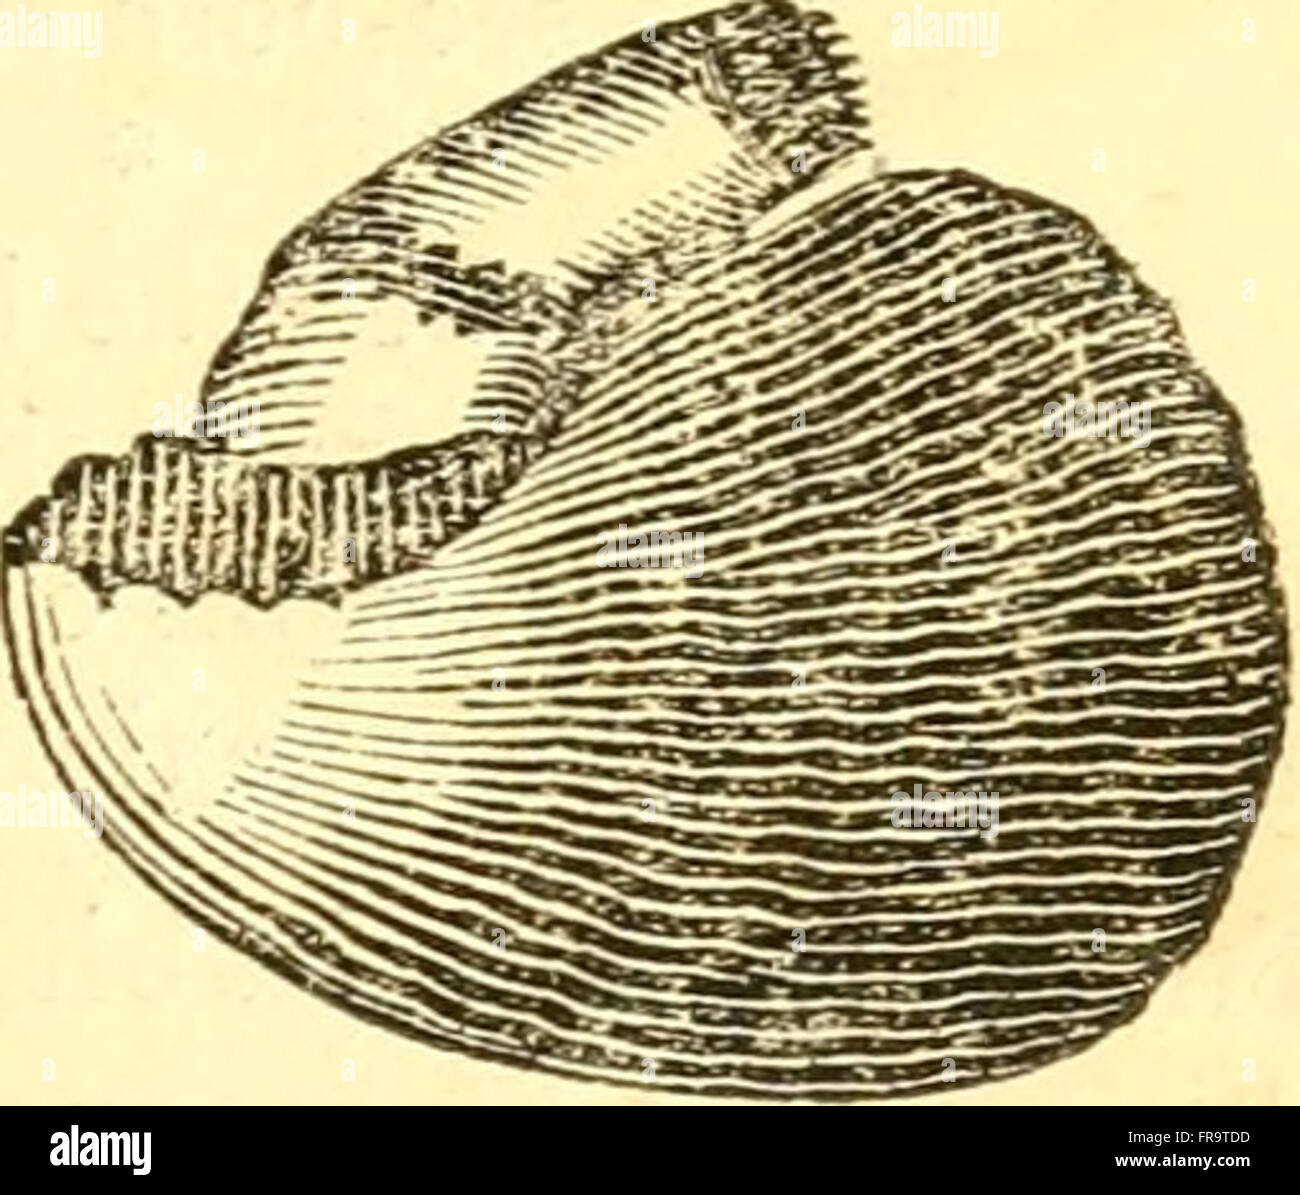 Le livre de coquilles - contenant les classes, mollusques Conchifera, Cirrhipeda, annulata, et crustacés (1837) Banque D'Images